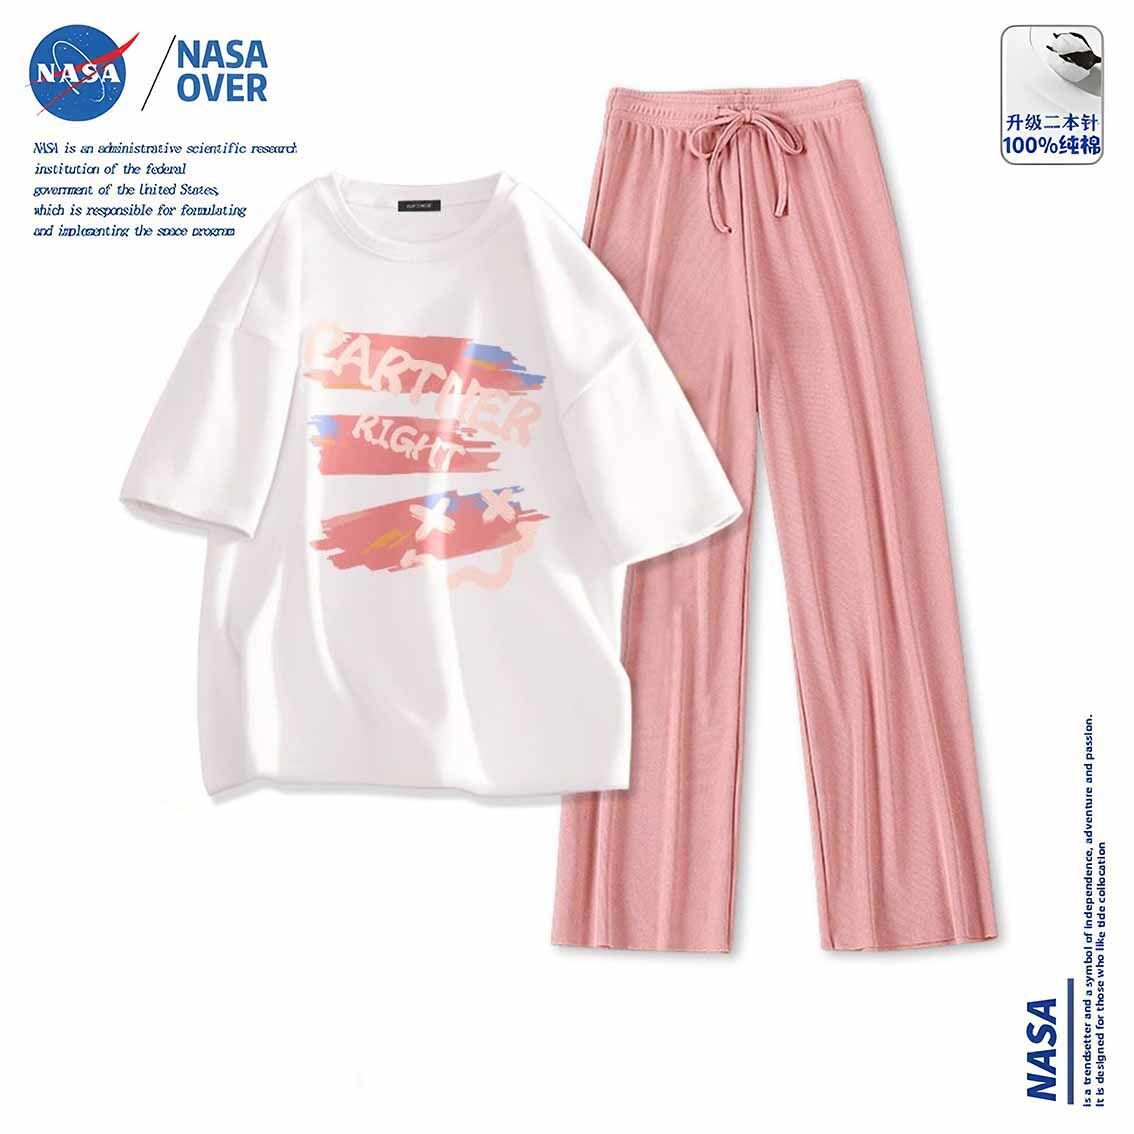 NASAOVER NASA联名休闲套装女纯棉短袖t恤冰丝阔腿长裤夏季超萌穿搭一整套 38.4